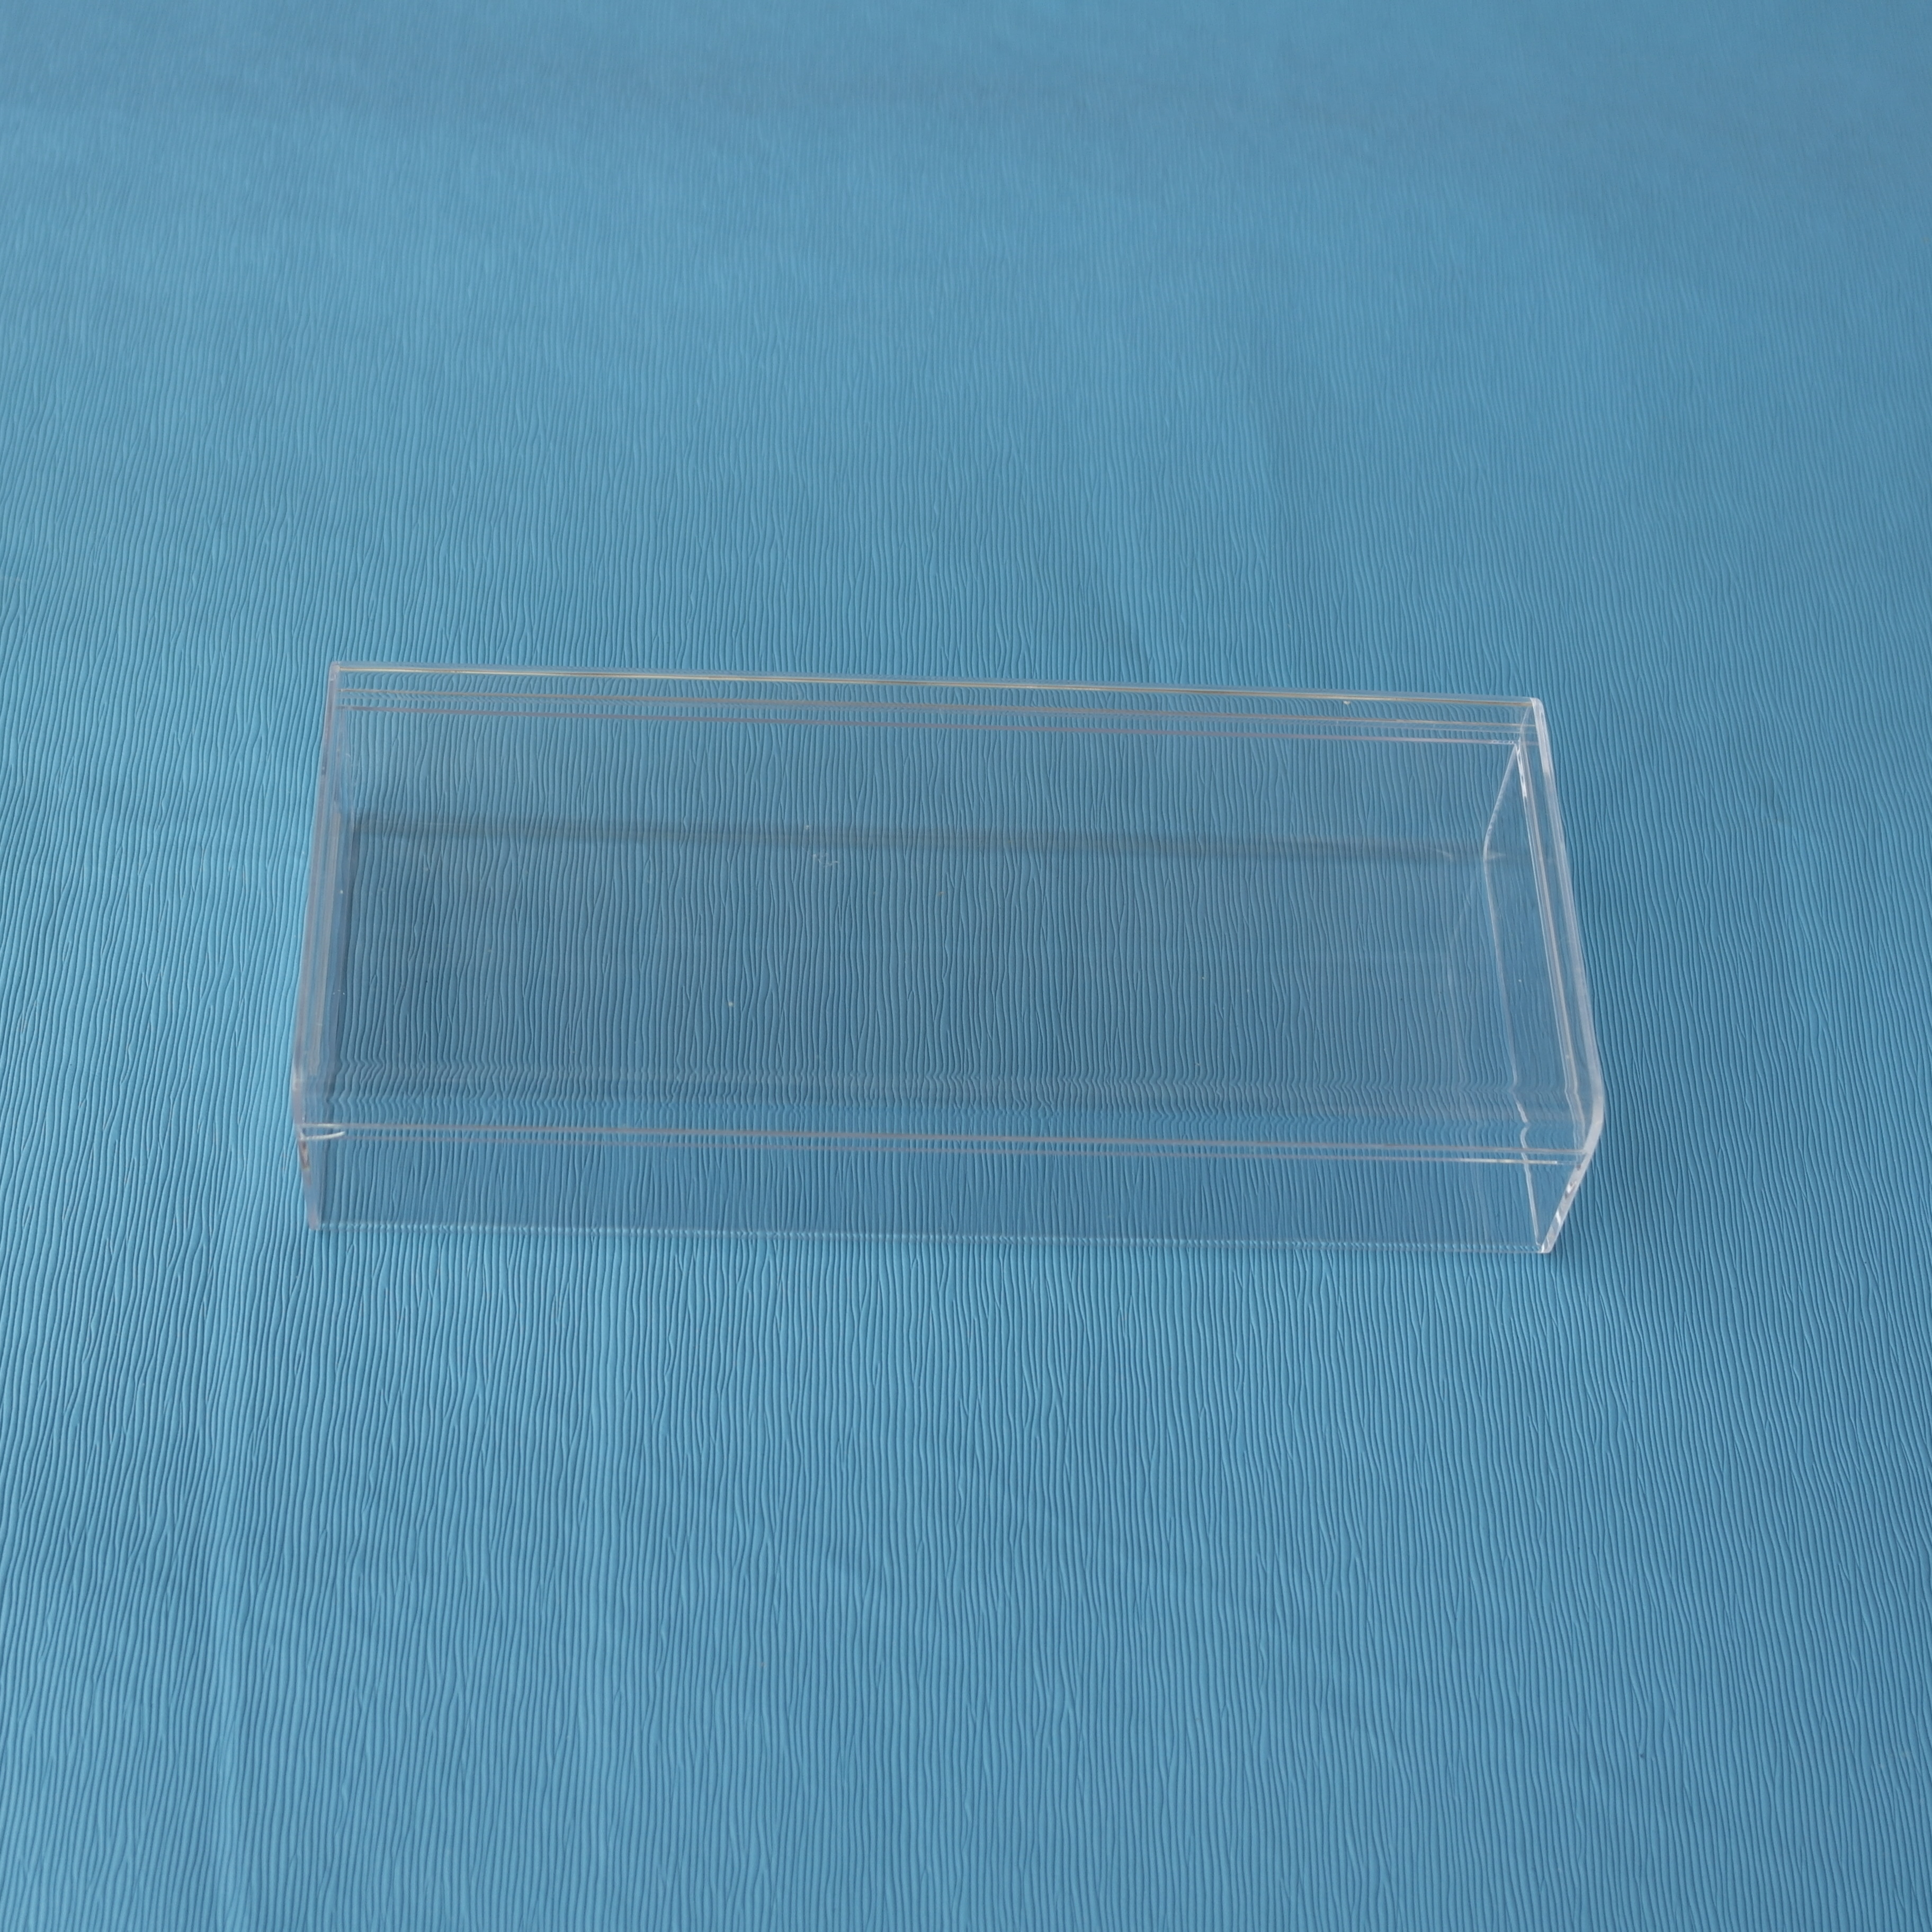 PS水晶盒批发 塑料水晶盒厂家直销图片